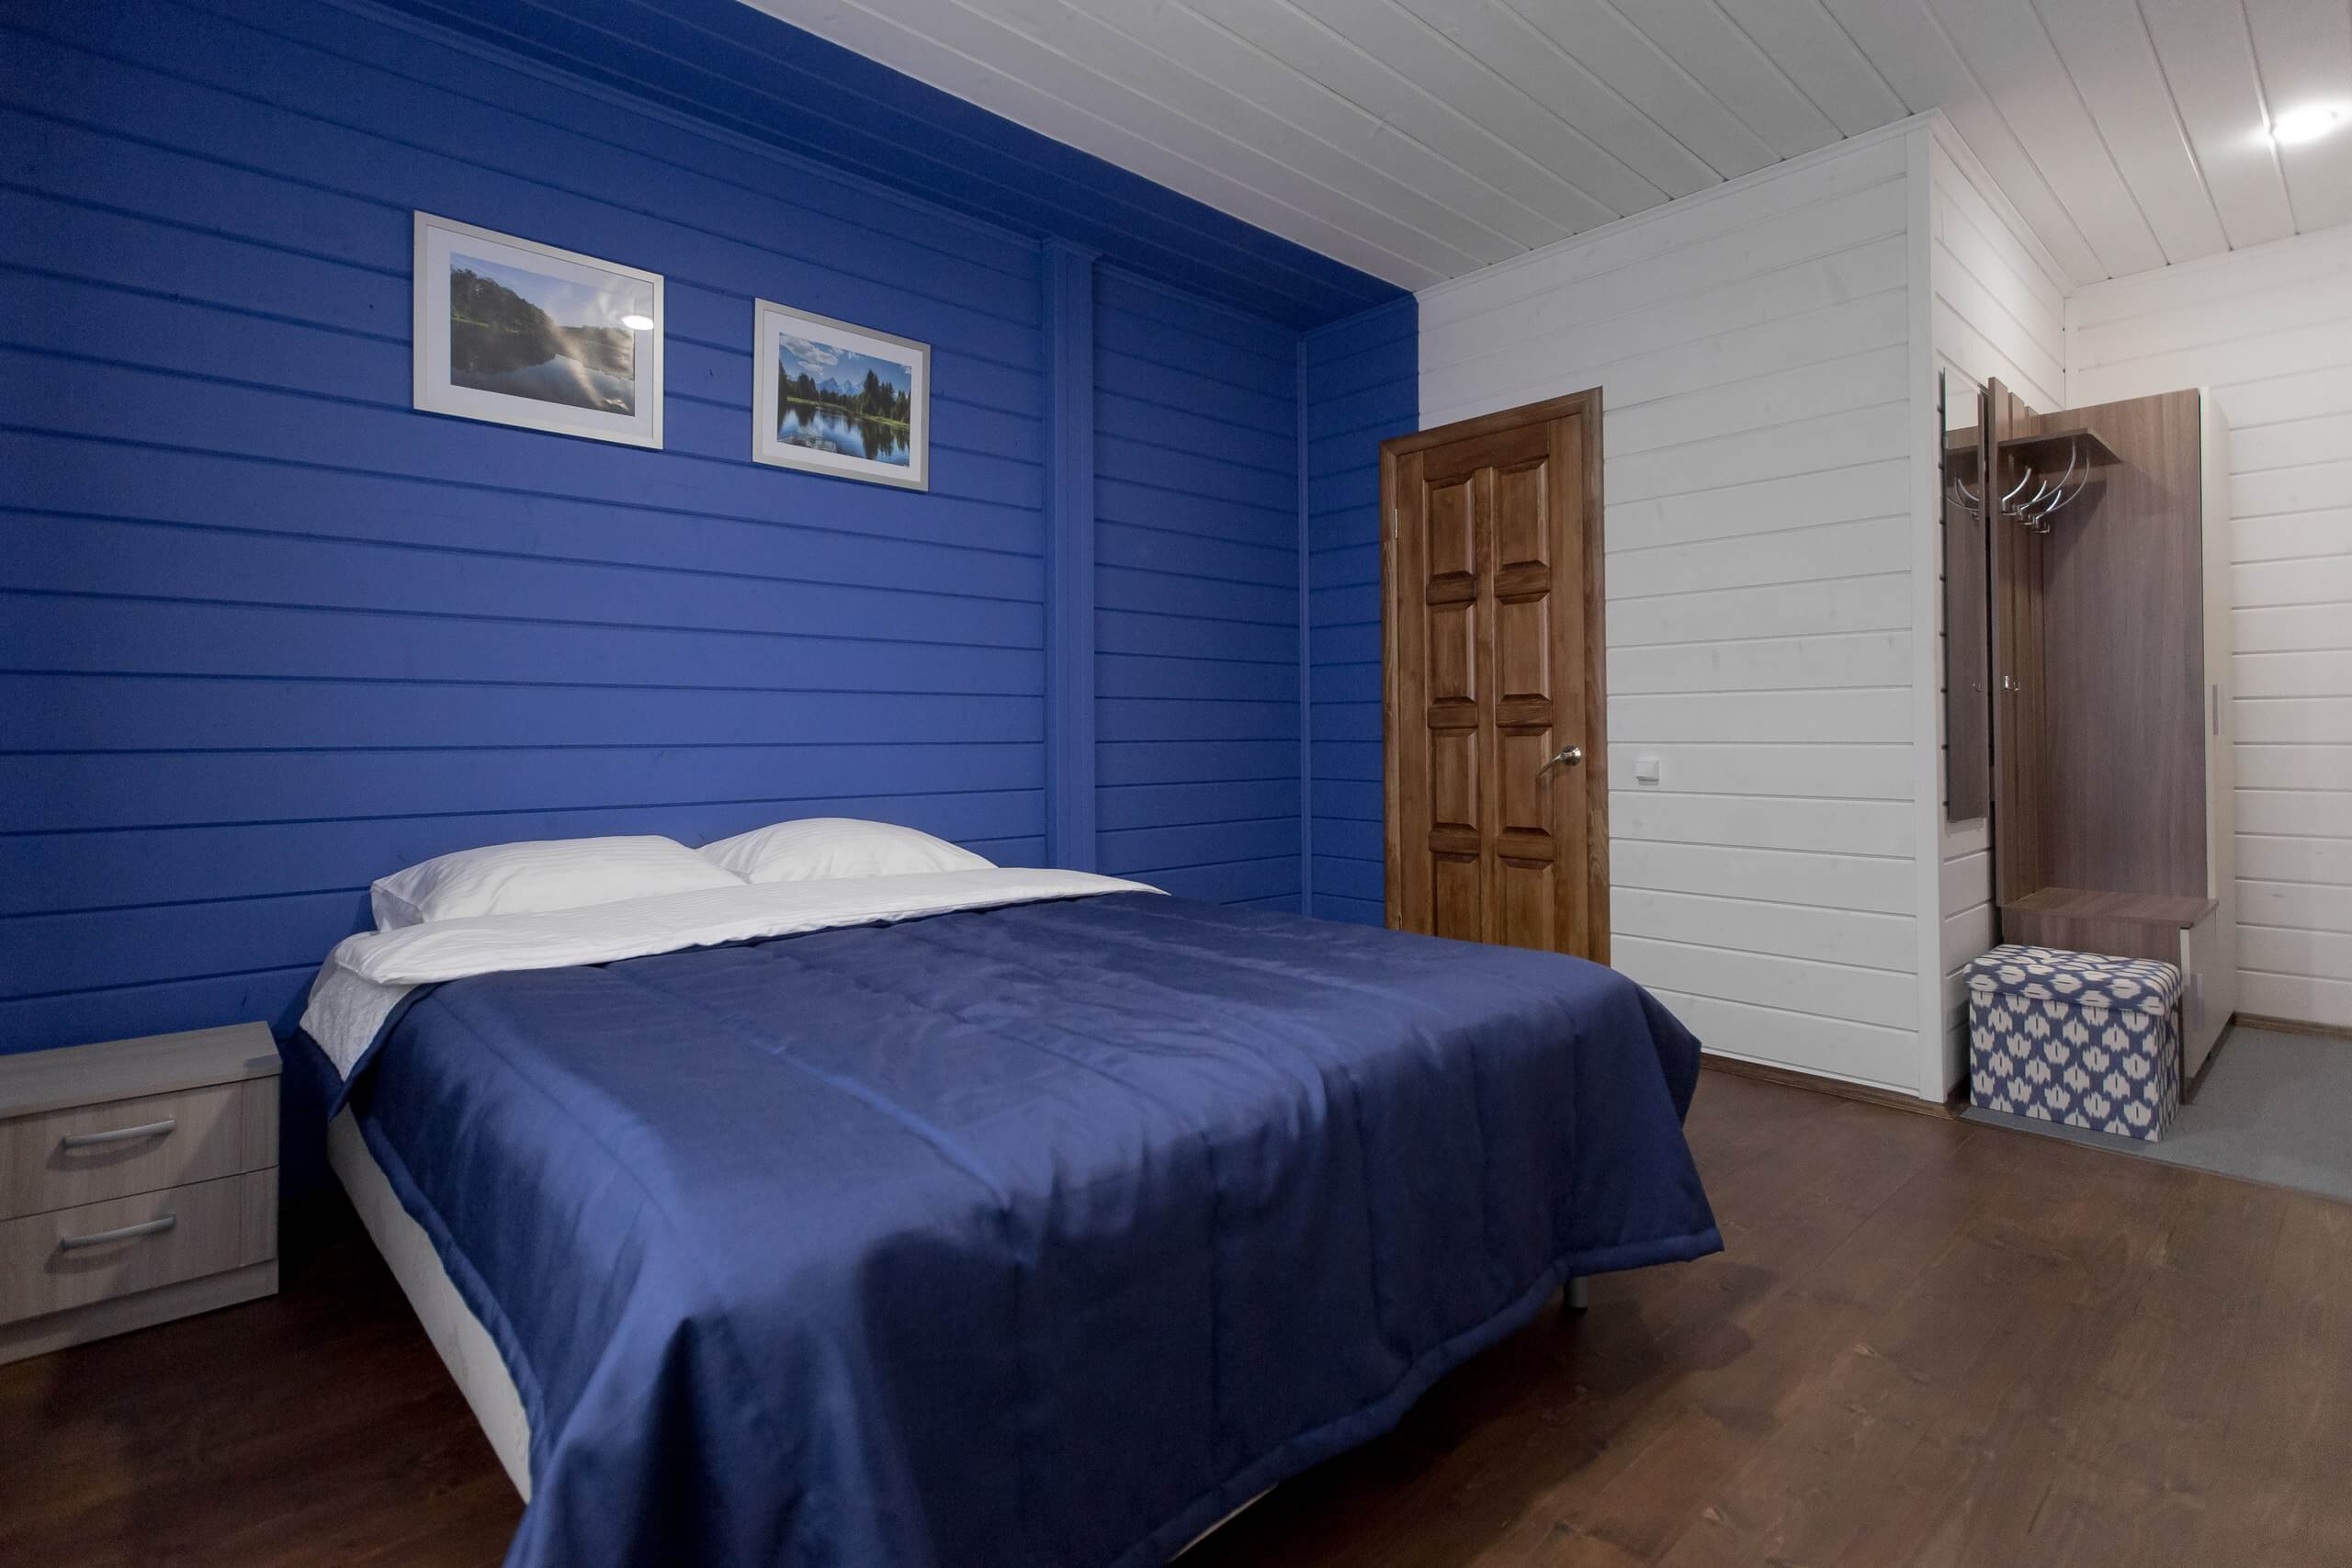 Цвет интерьера комнаты - синий и белый.